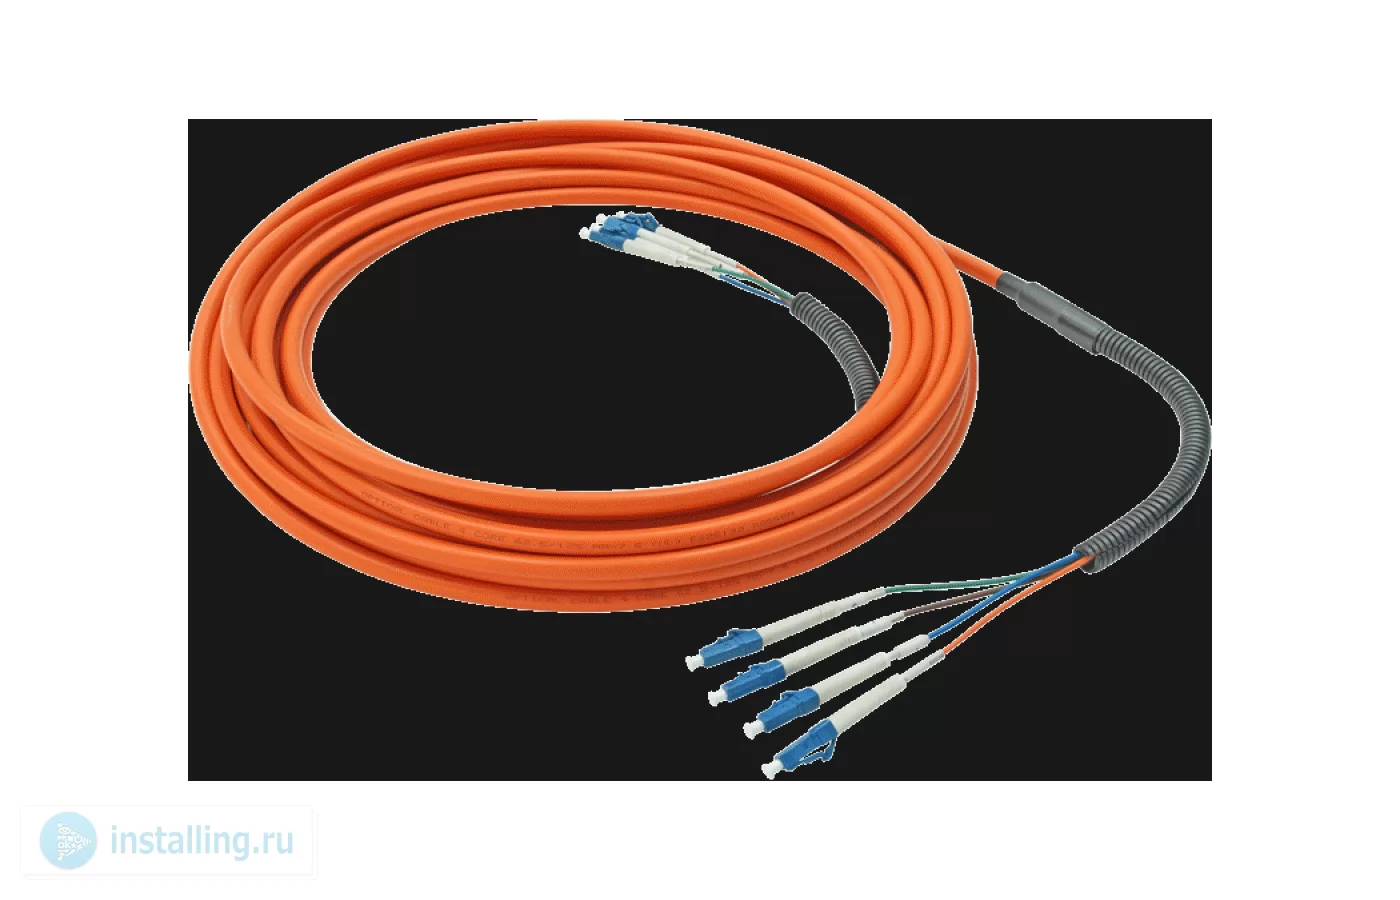 Купить Четырехжильный многомодовый оптоволоконный кабель Длина кабеля, м 30  Opticis LLMQ-625BO-30 самовывозом в Москве или доставкой по России.